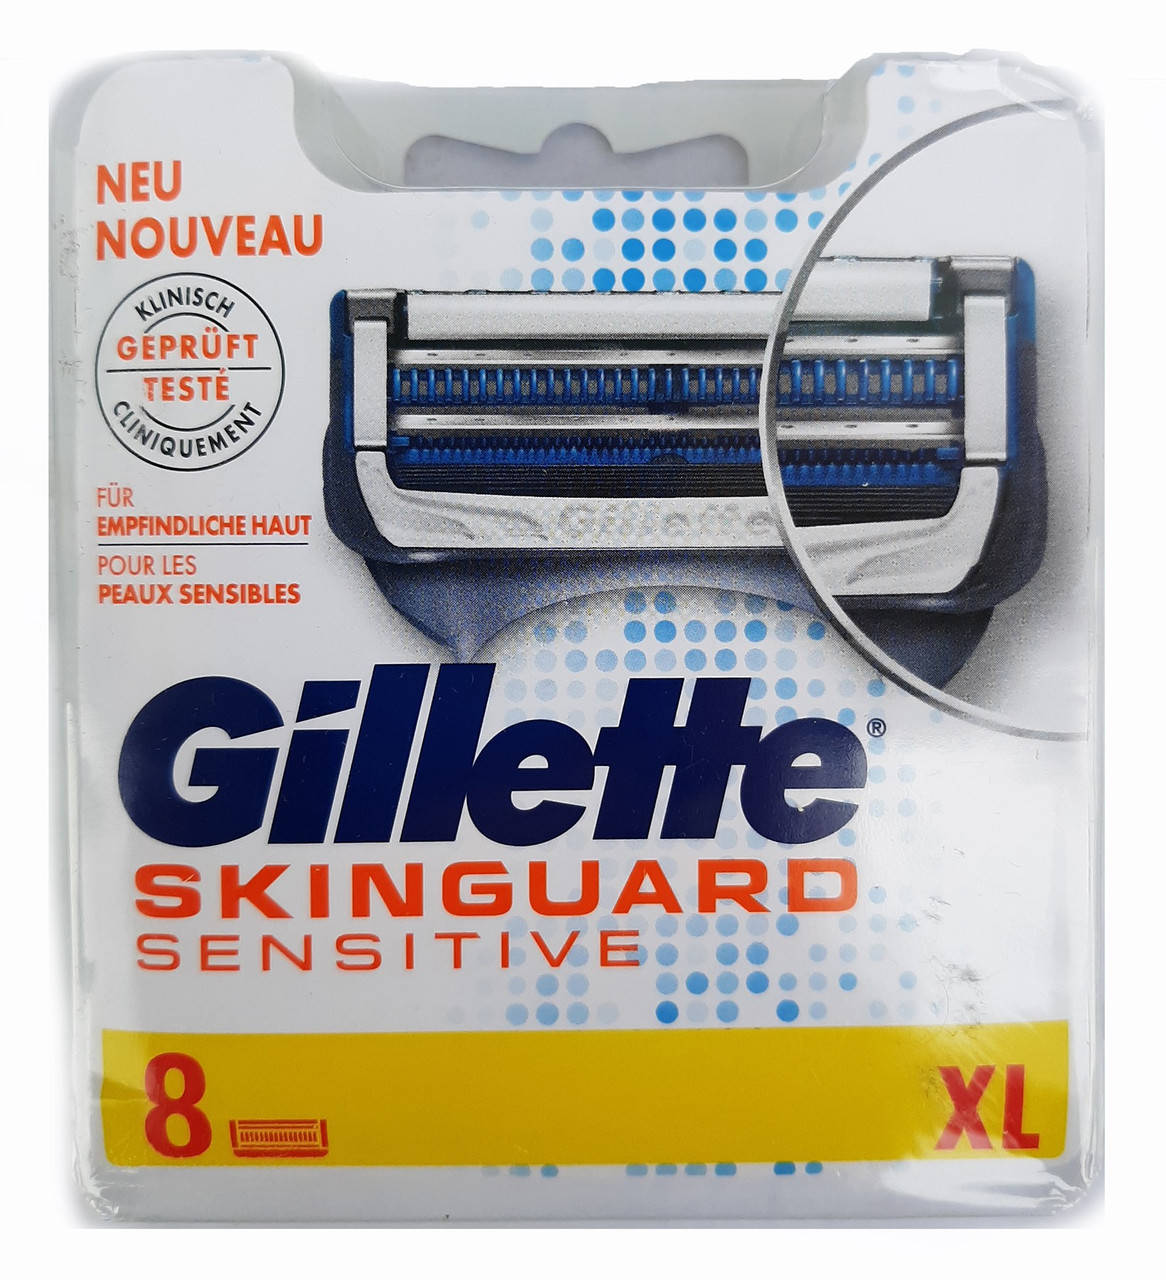 

Сменные кассеты Gillette Skinguard (8шт) Европа